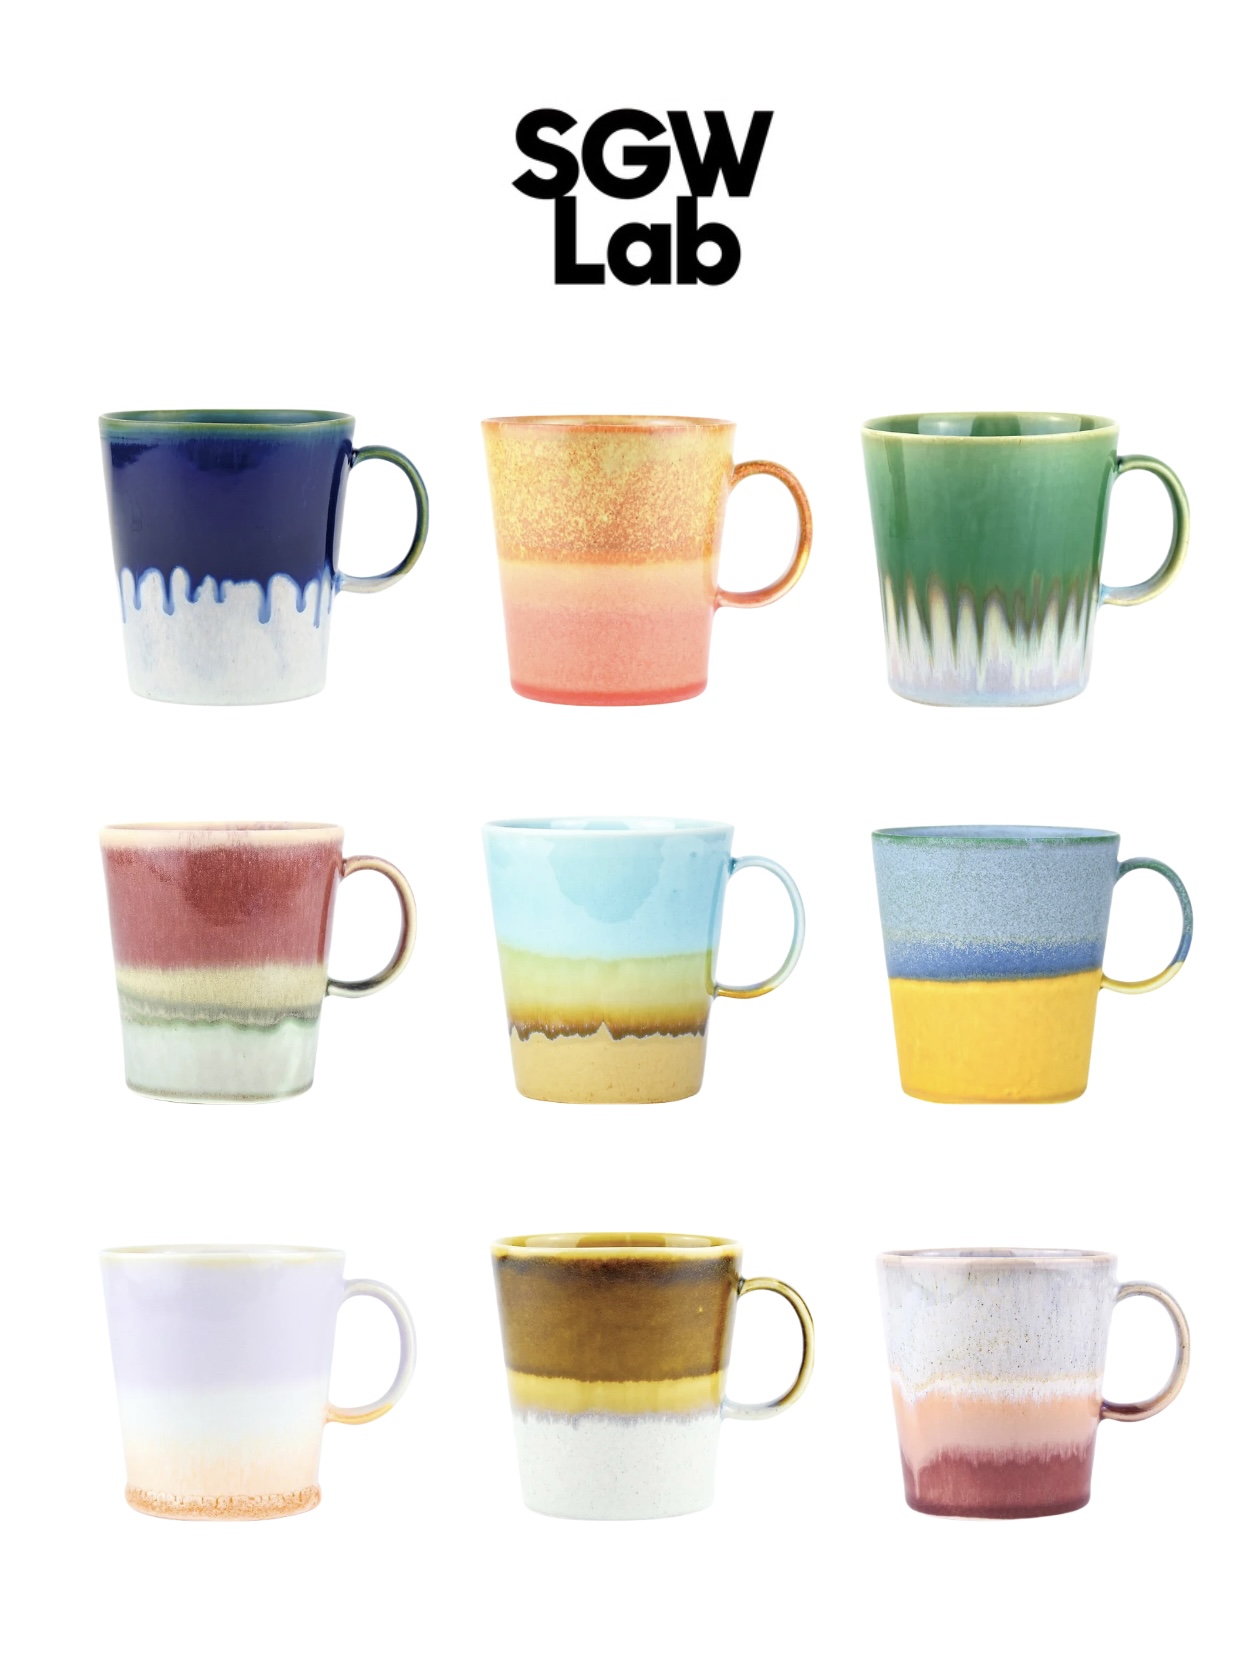 [YURUUI设计师]英国SGW Lab纯手工制作渐变晕染陶瓷马克杯咖啡杯